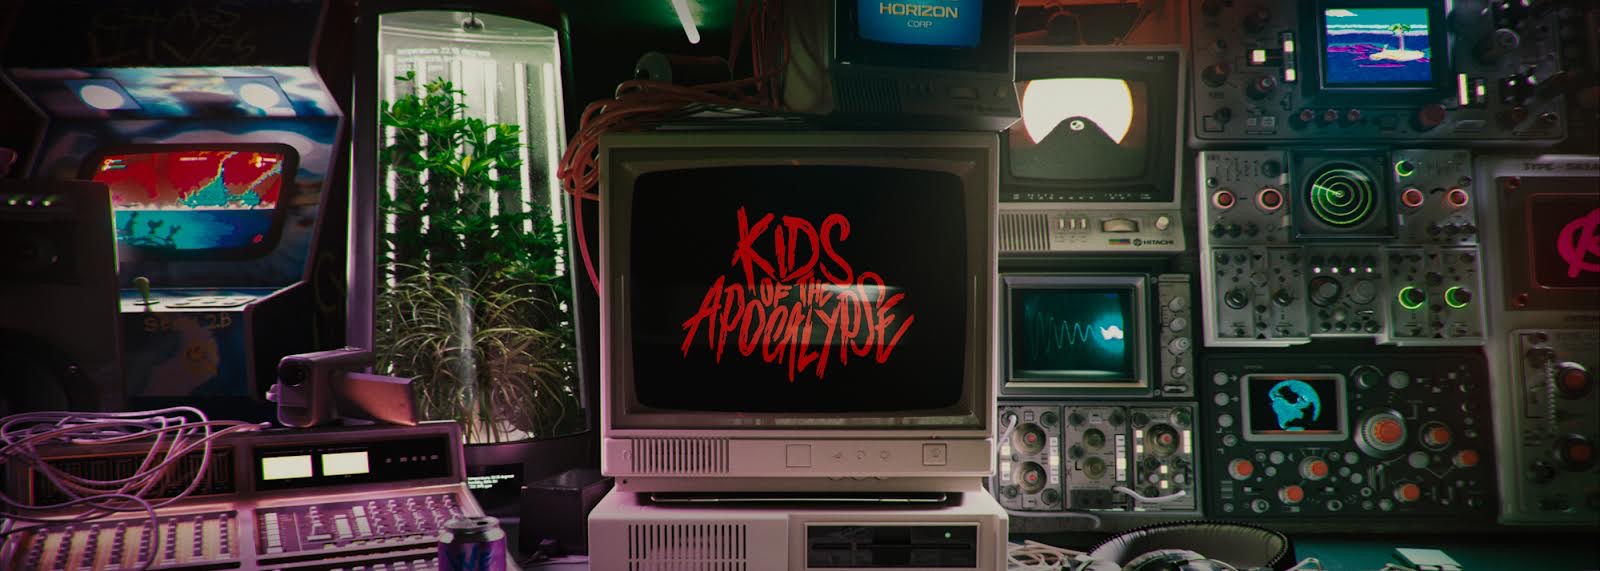 KidsOfTheApocalypse banner